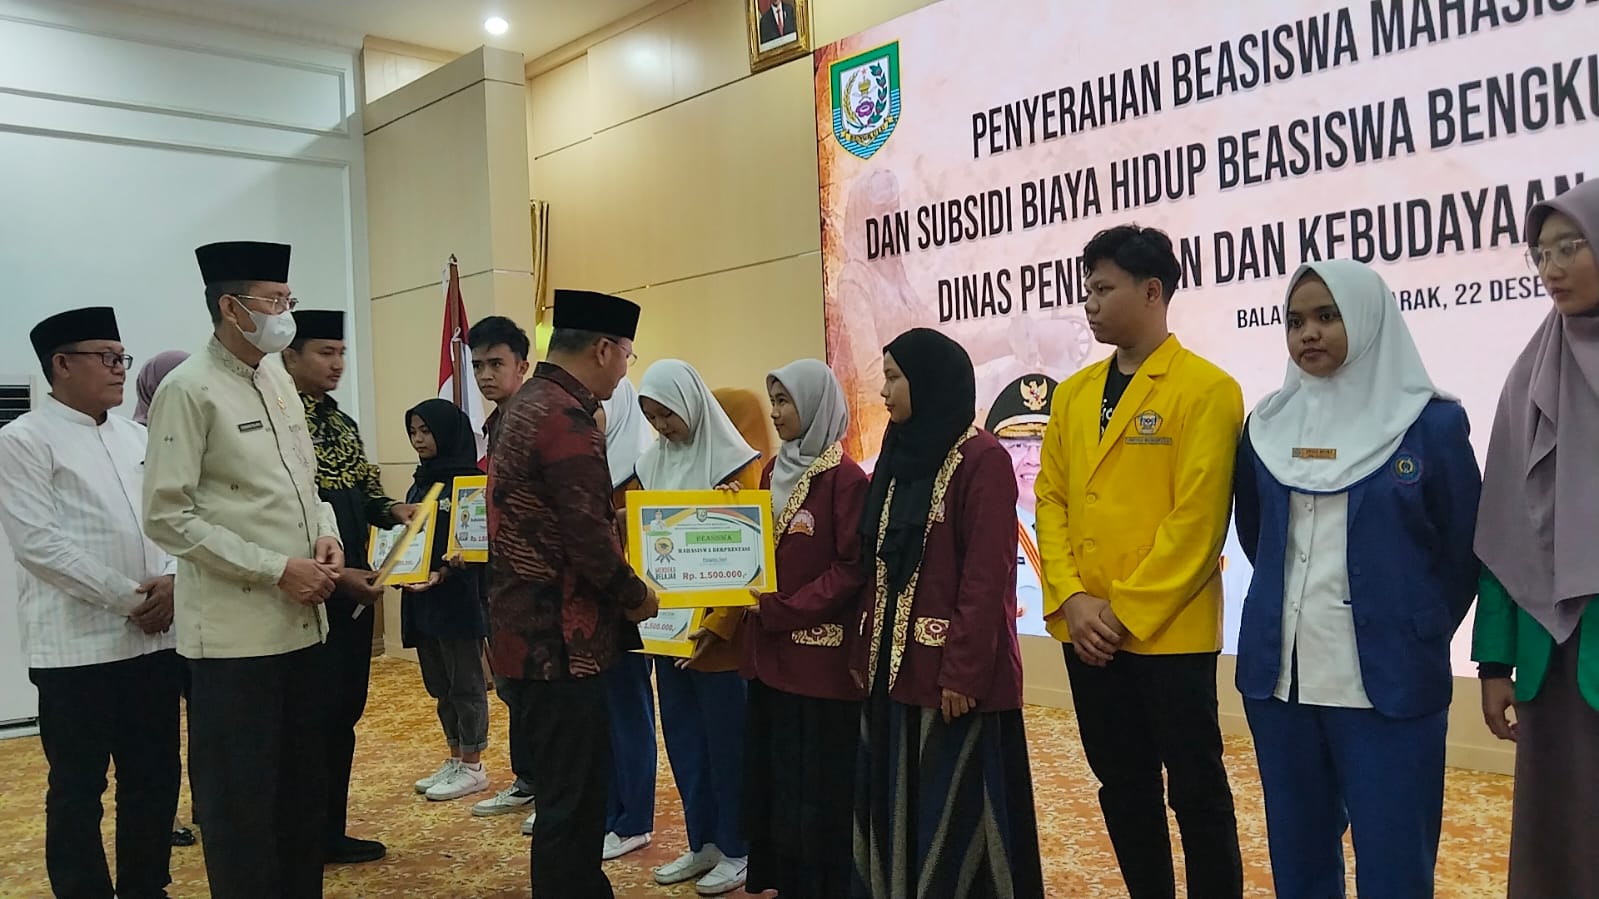 Mahasiswa Berprestasi di Provinsi Bengkulu Terima Beasiswa, Gubernur: Ini Bukti Perhatian Pemerintah